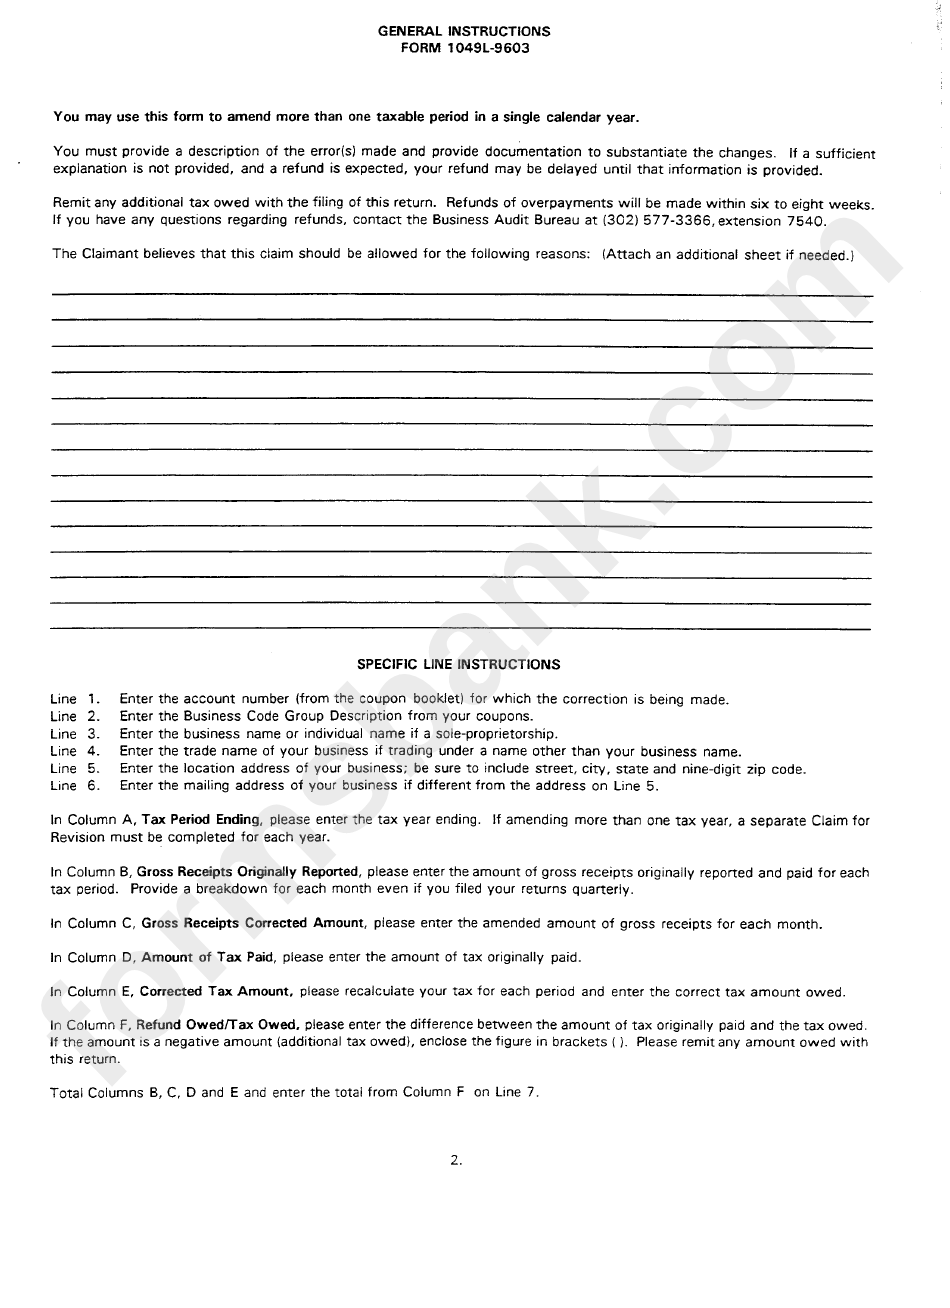 Form 1049l-9603 - General Instructions